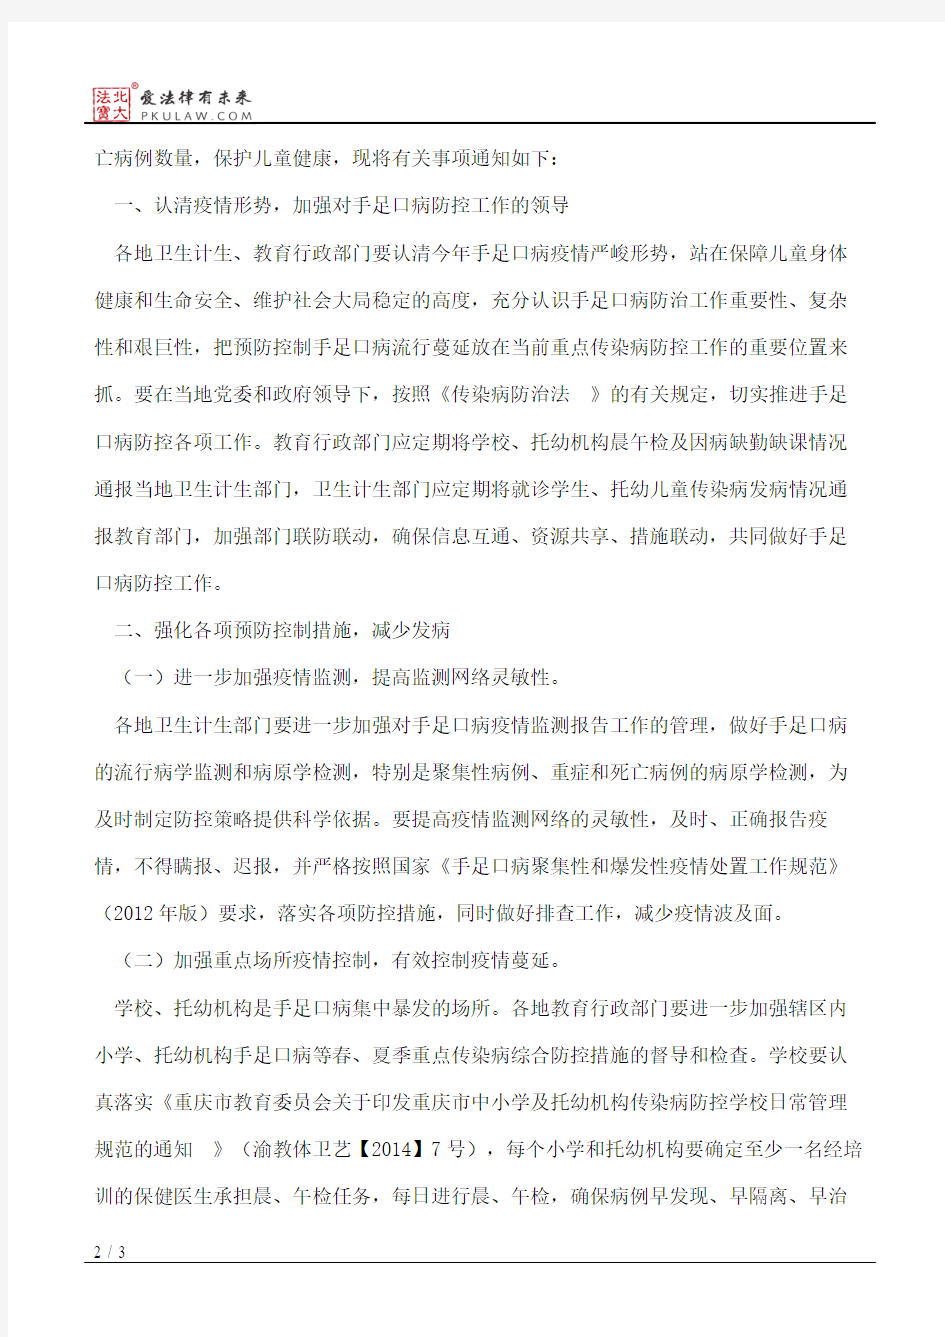 重庆市卫生和计划生育委员会、重庆市教育委员会关于进一步加强重